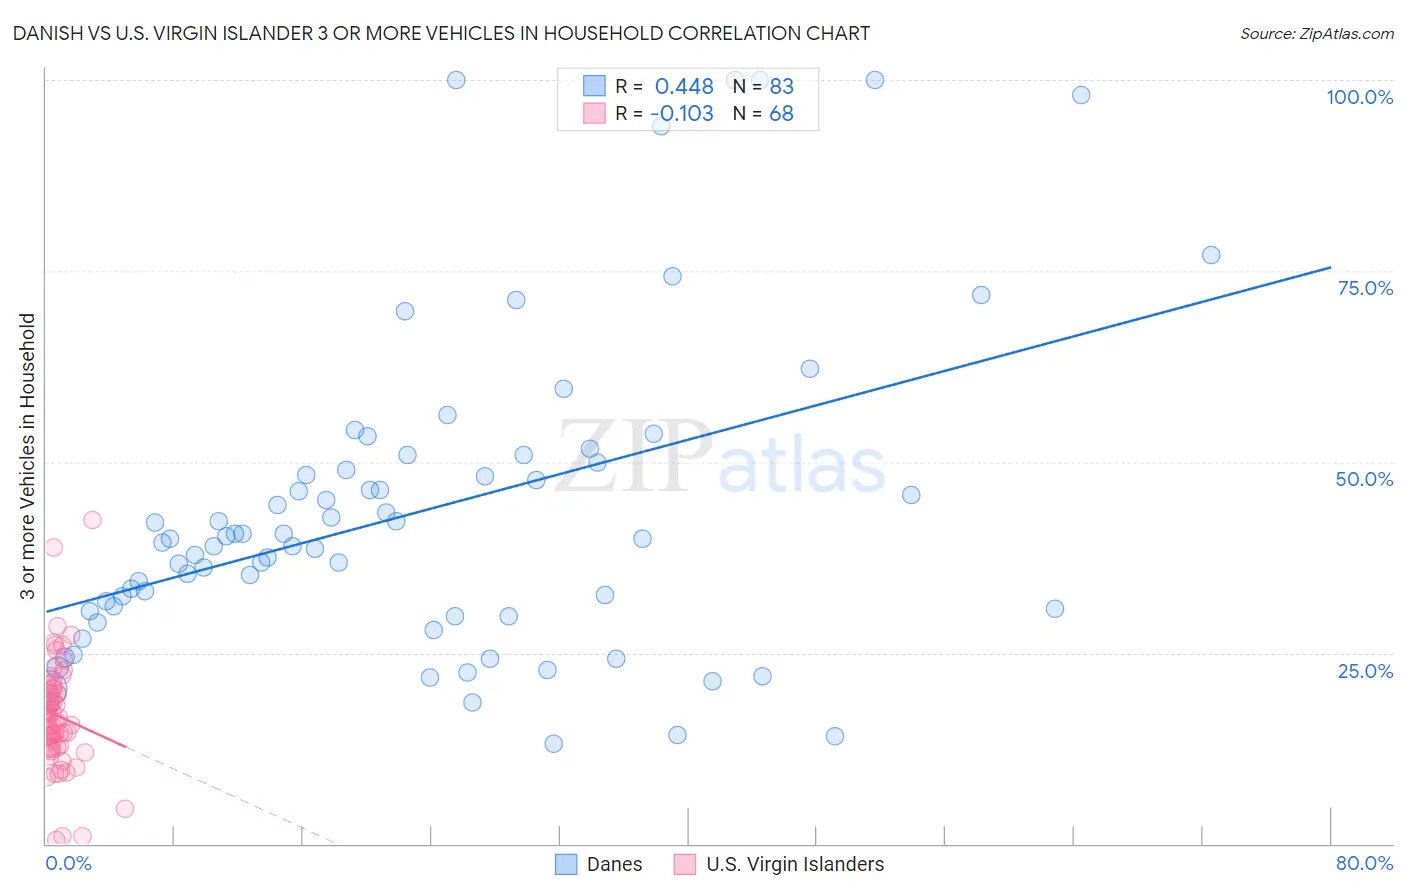 Danish vs U.S. Virgin Islander 3 or more Vehicles in Household